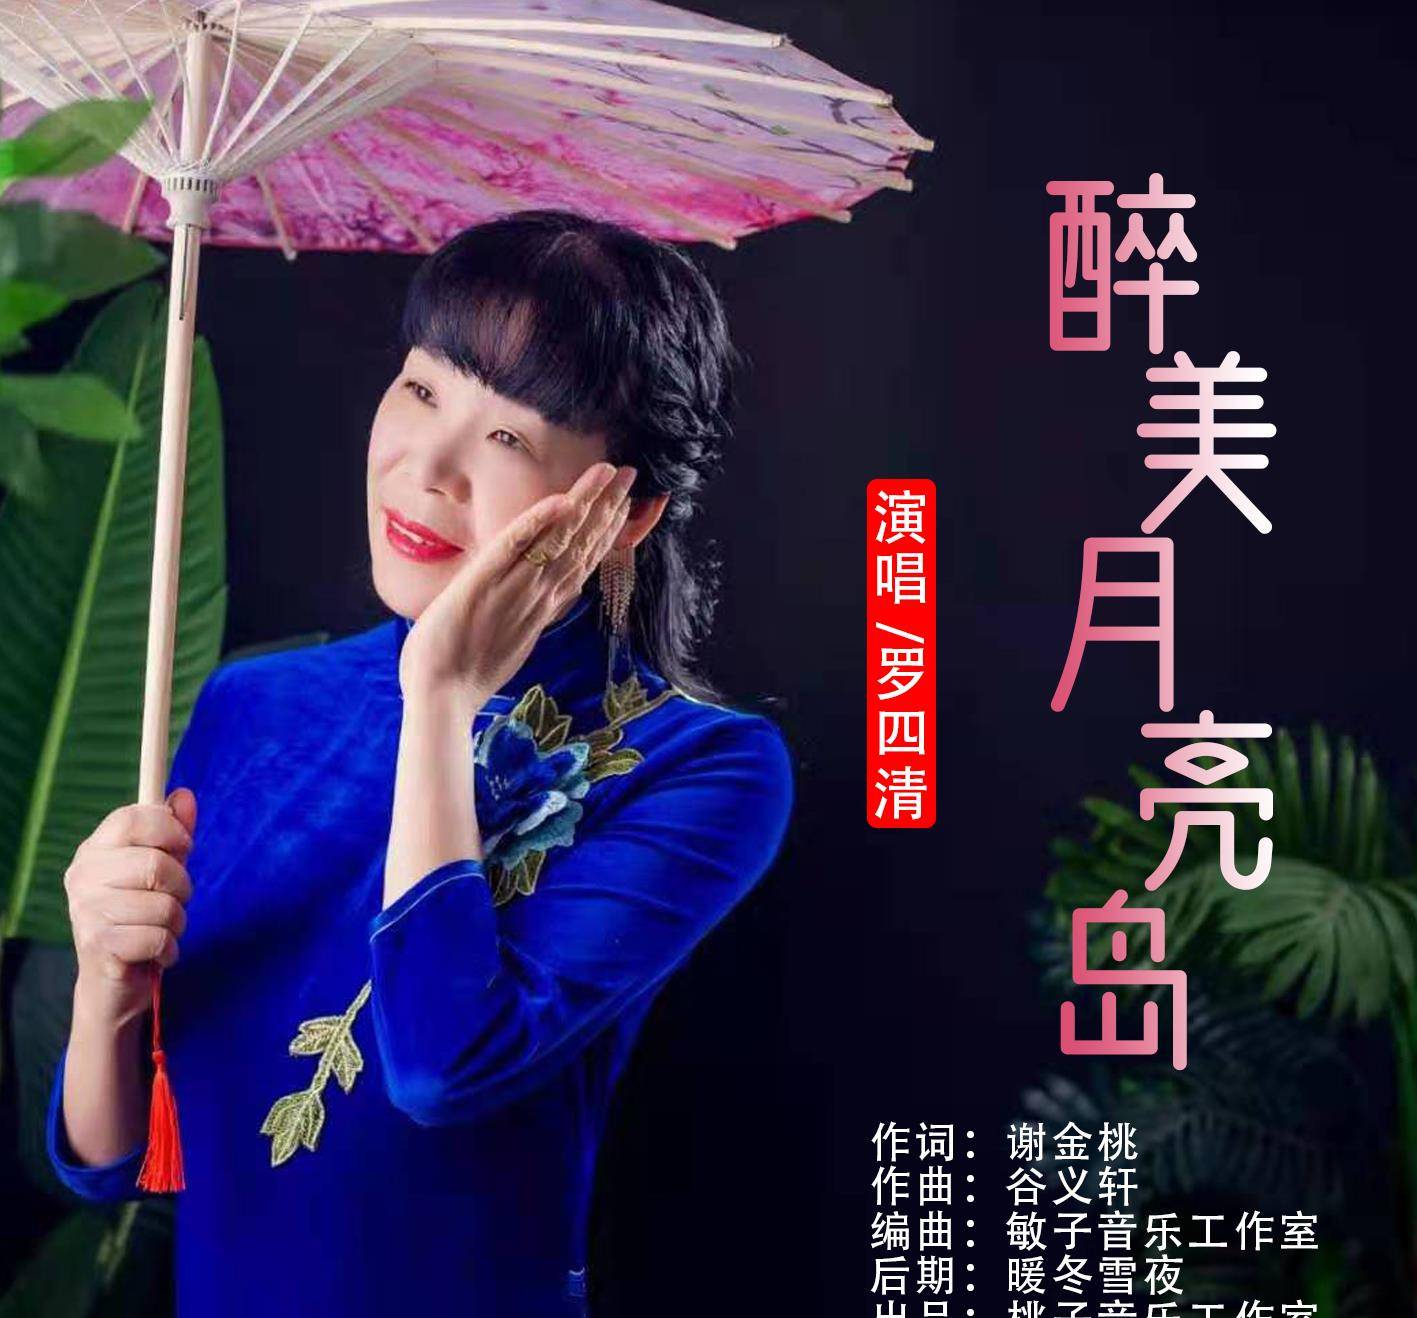 华语女歌手罗四清《醉美月亮岛》即将全网发布!